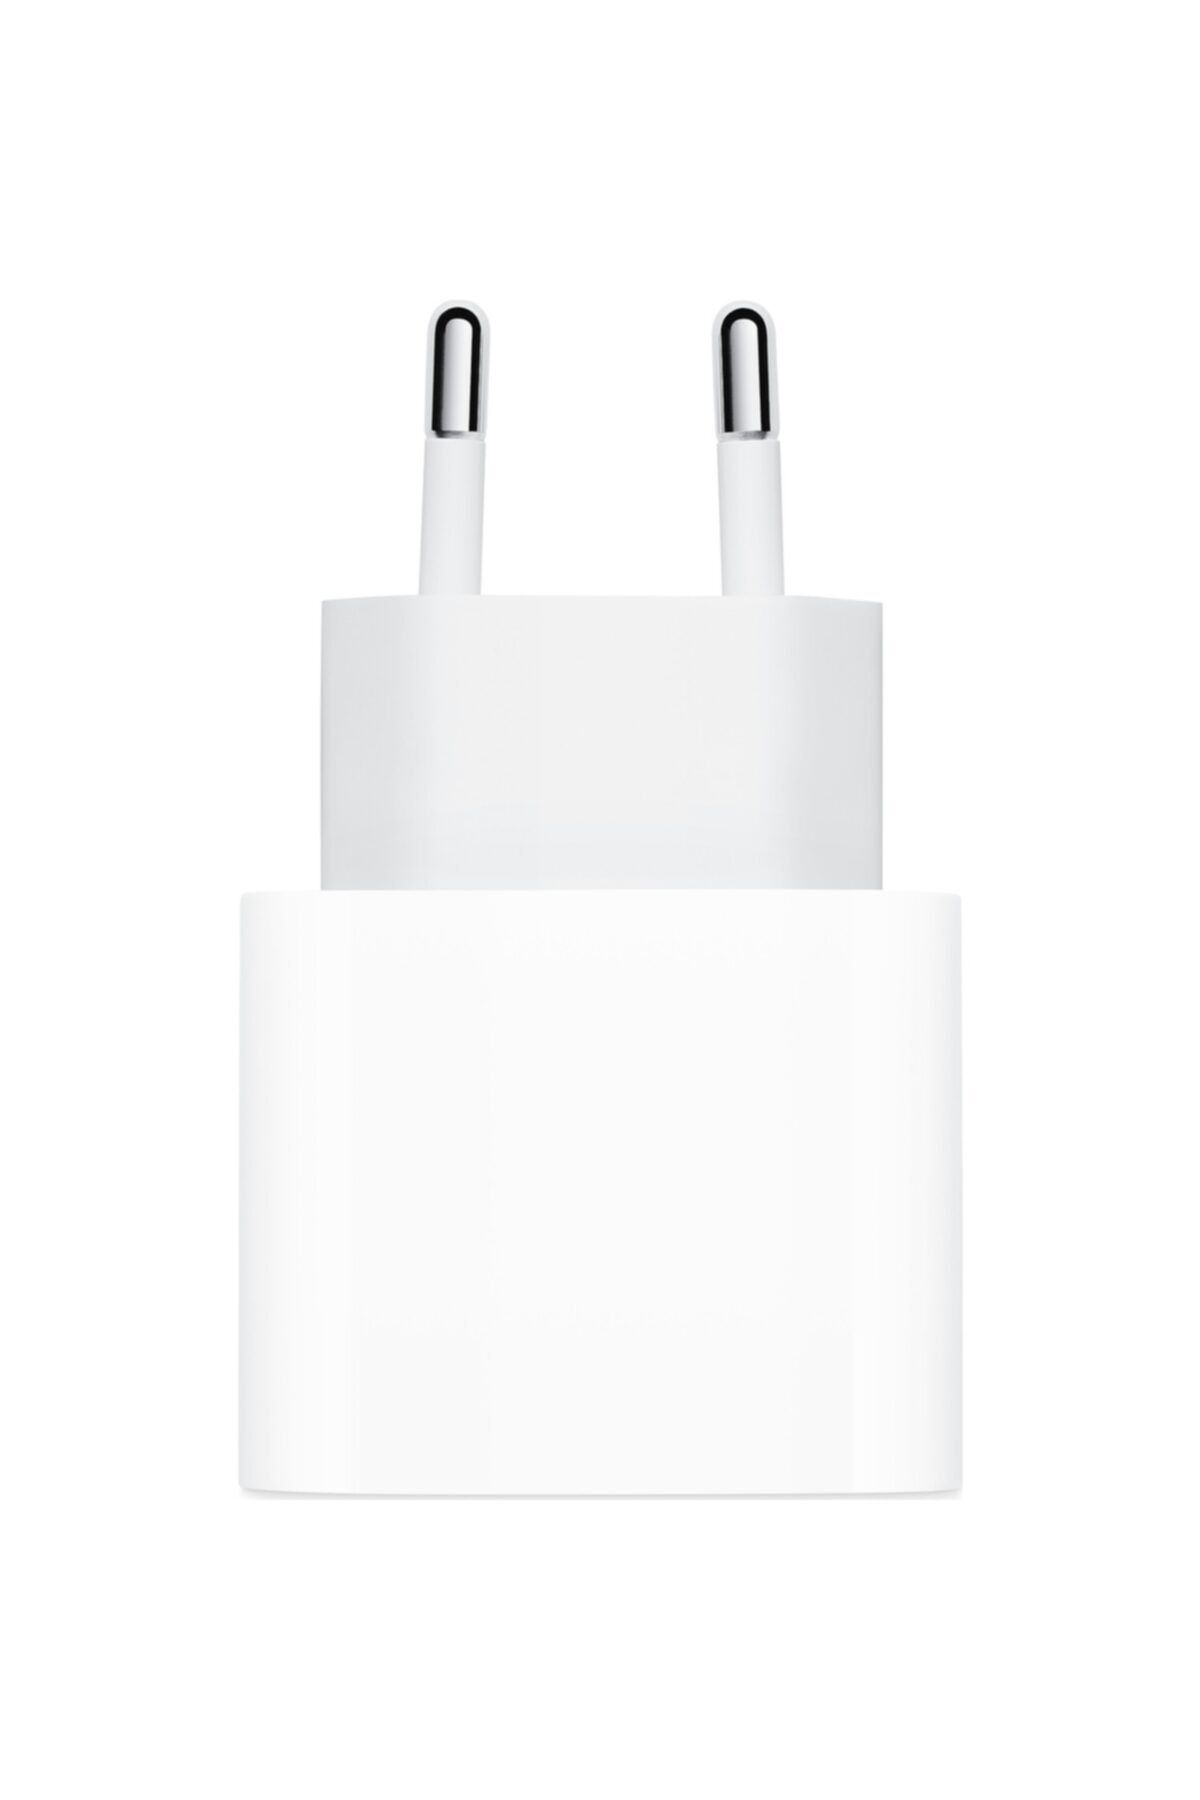 Apple 20 W USB-C Şarj Güç Adaptörü (Apple Türkiye Garantili) MHJE3TU/A